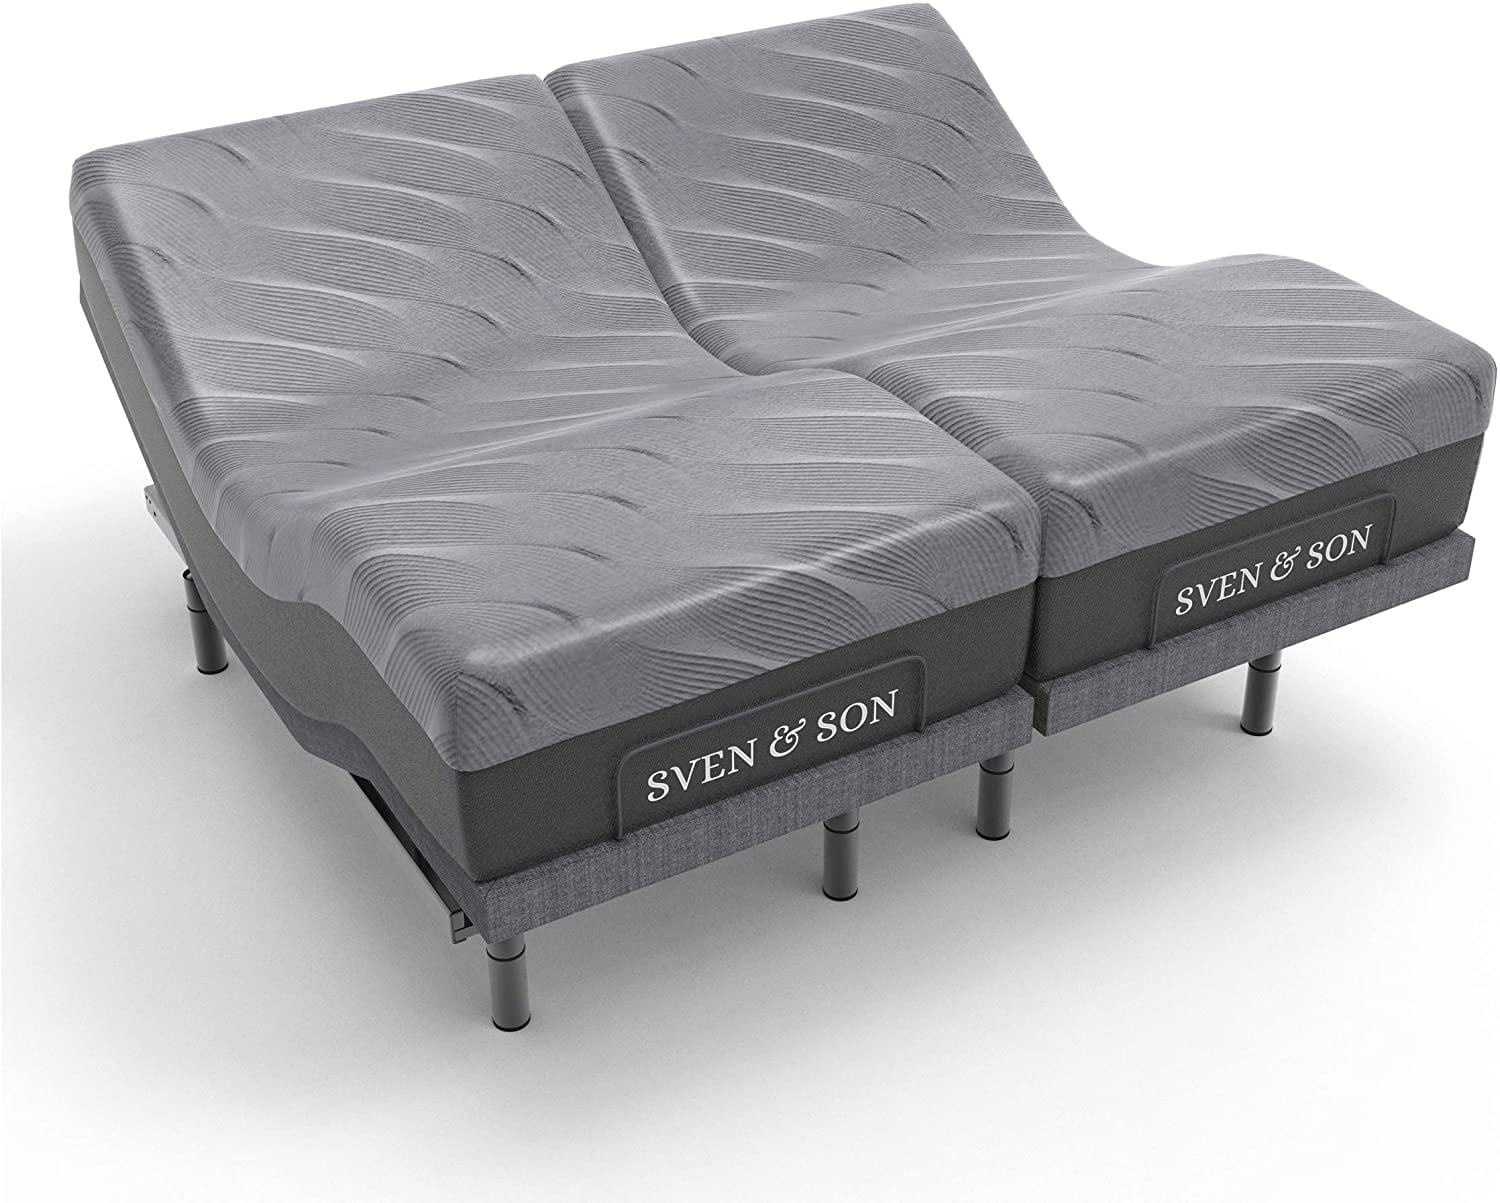 Sven Son Split King Adjustable Bed, King Bed Power Base